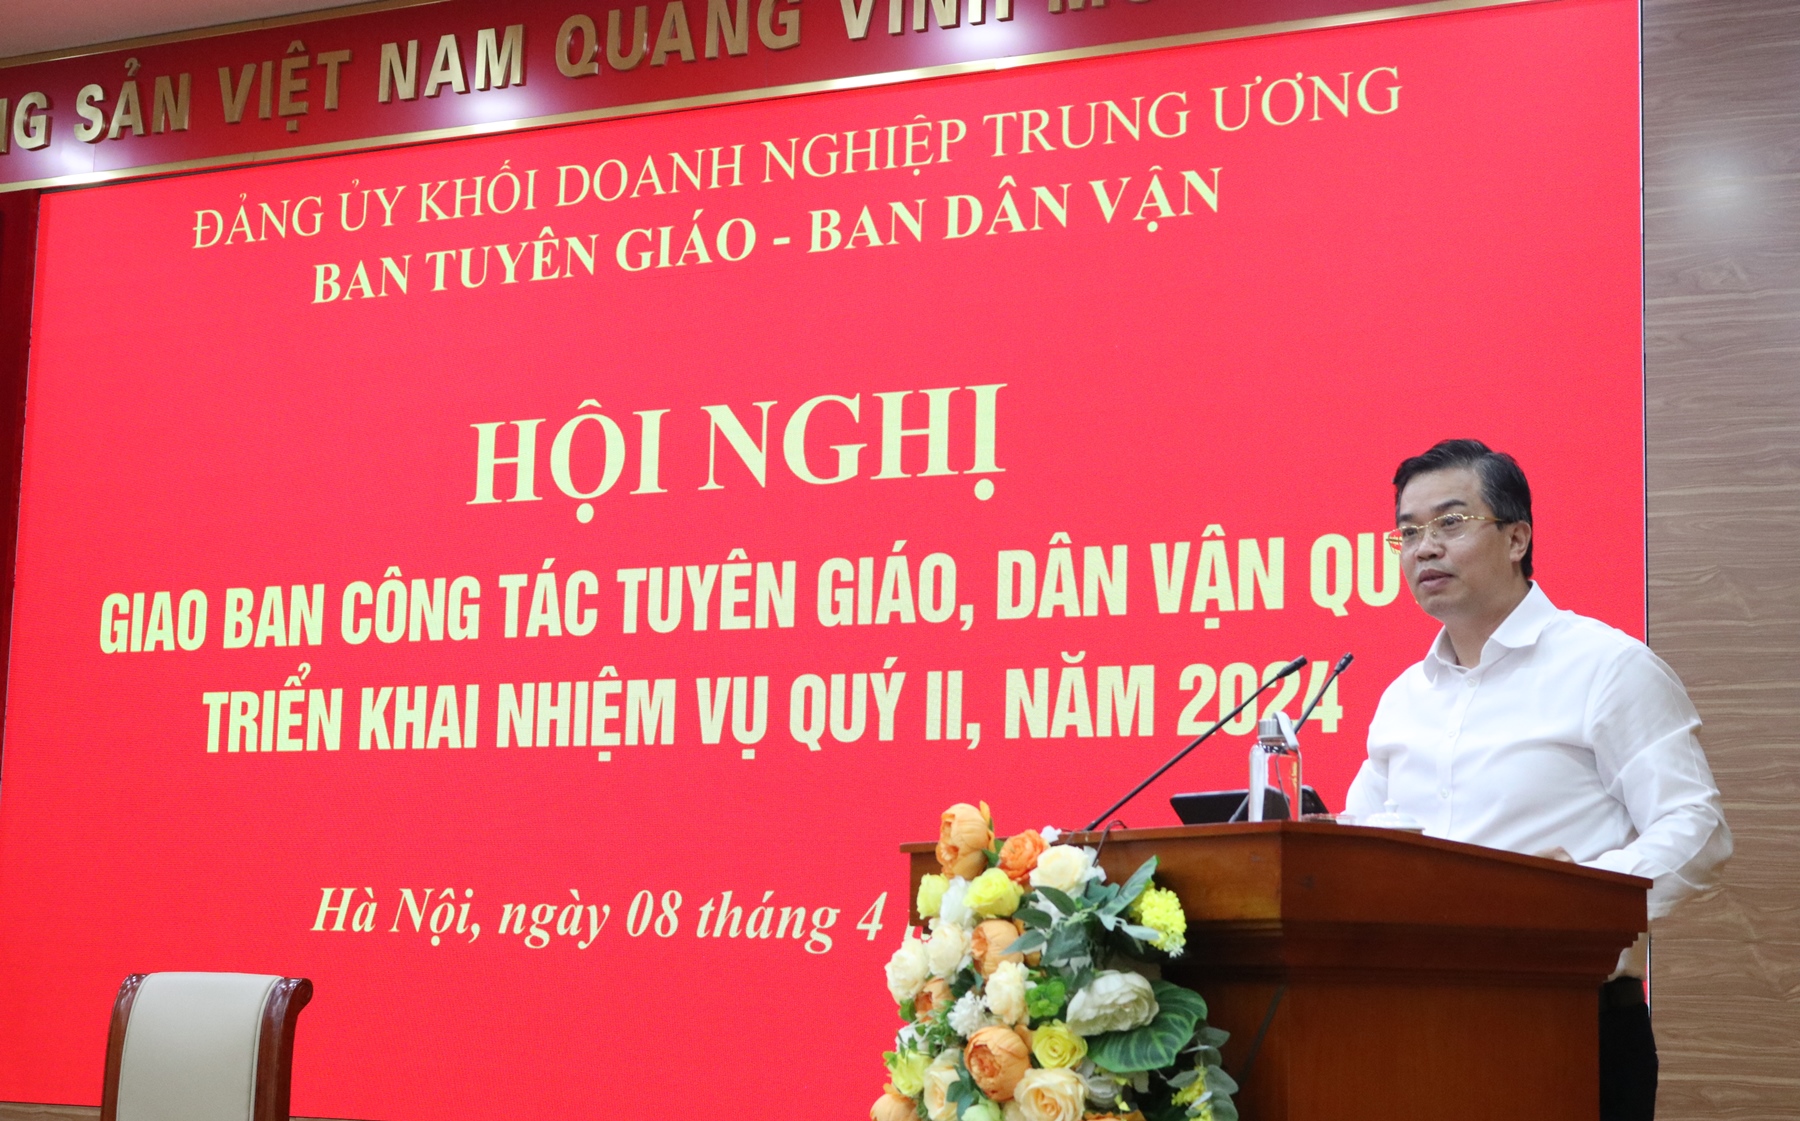 Đồng chí Nguyễn Trung Hiếu, Ủy viên Ban Thường vụ, Trưởng Ban Tuyên giáo Đảng ủy Khối